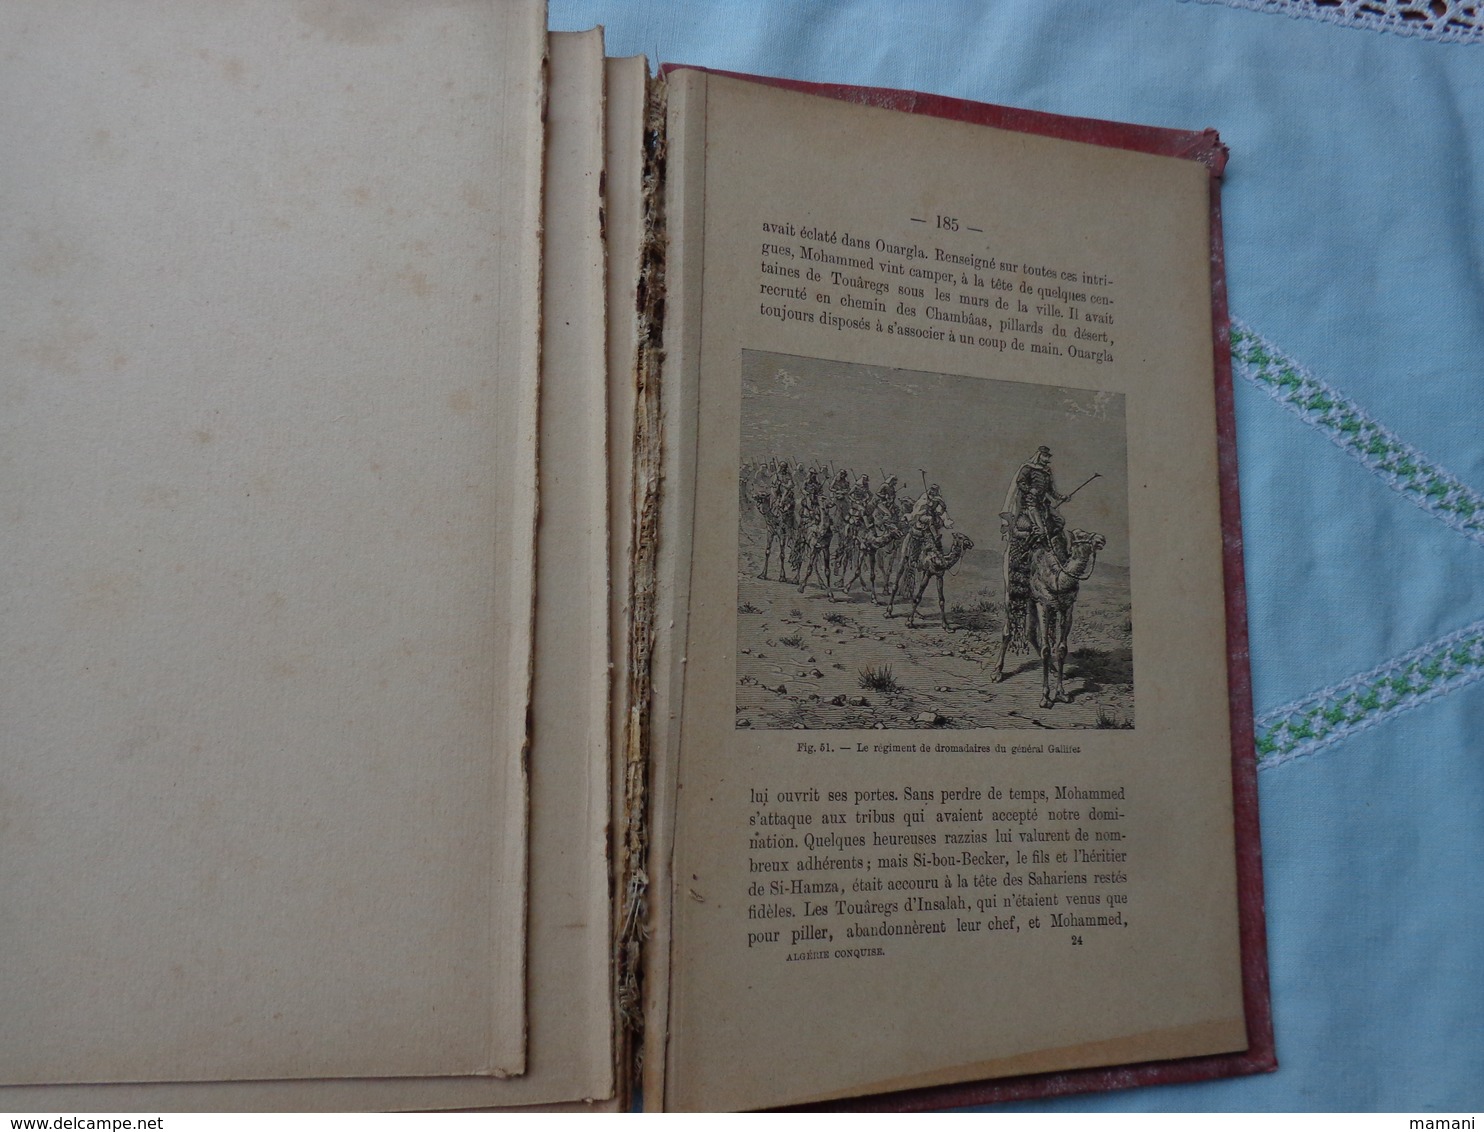 livre recompense -college de cette-l'algerie conquise depuis la prise de constantine a nos jours-paul gaffarel- 1890